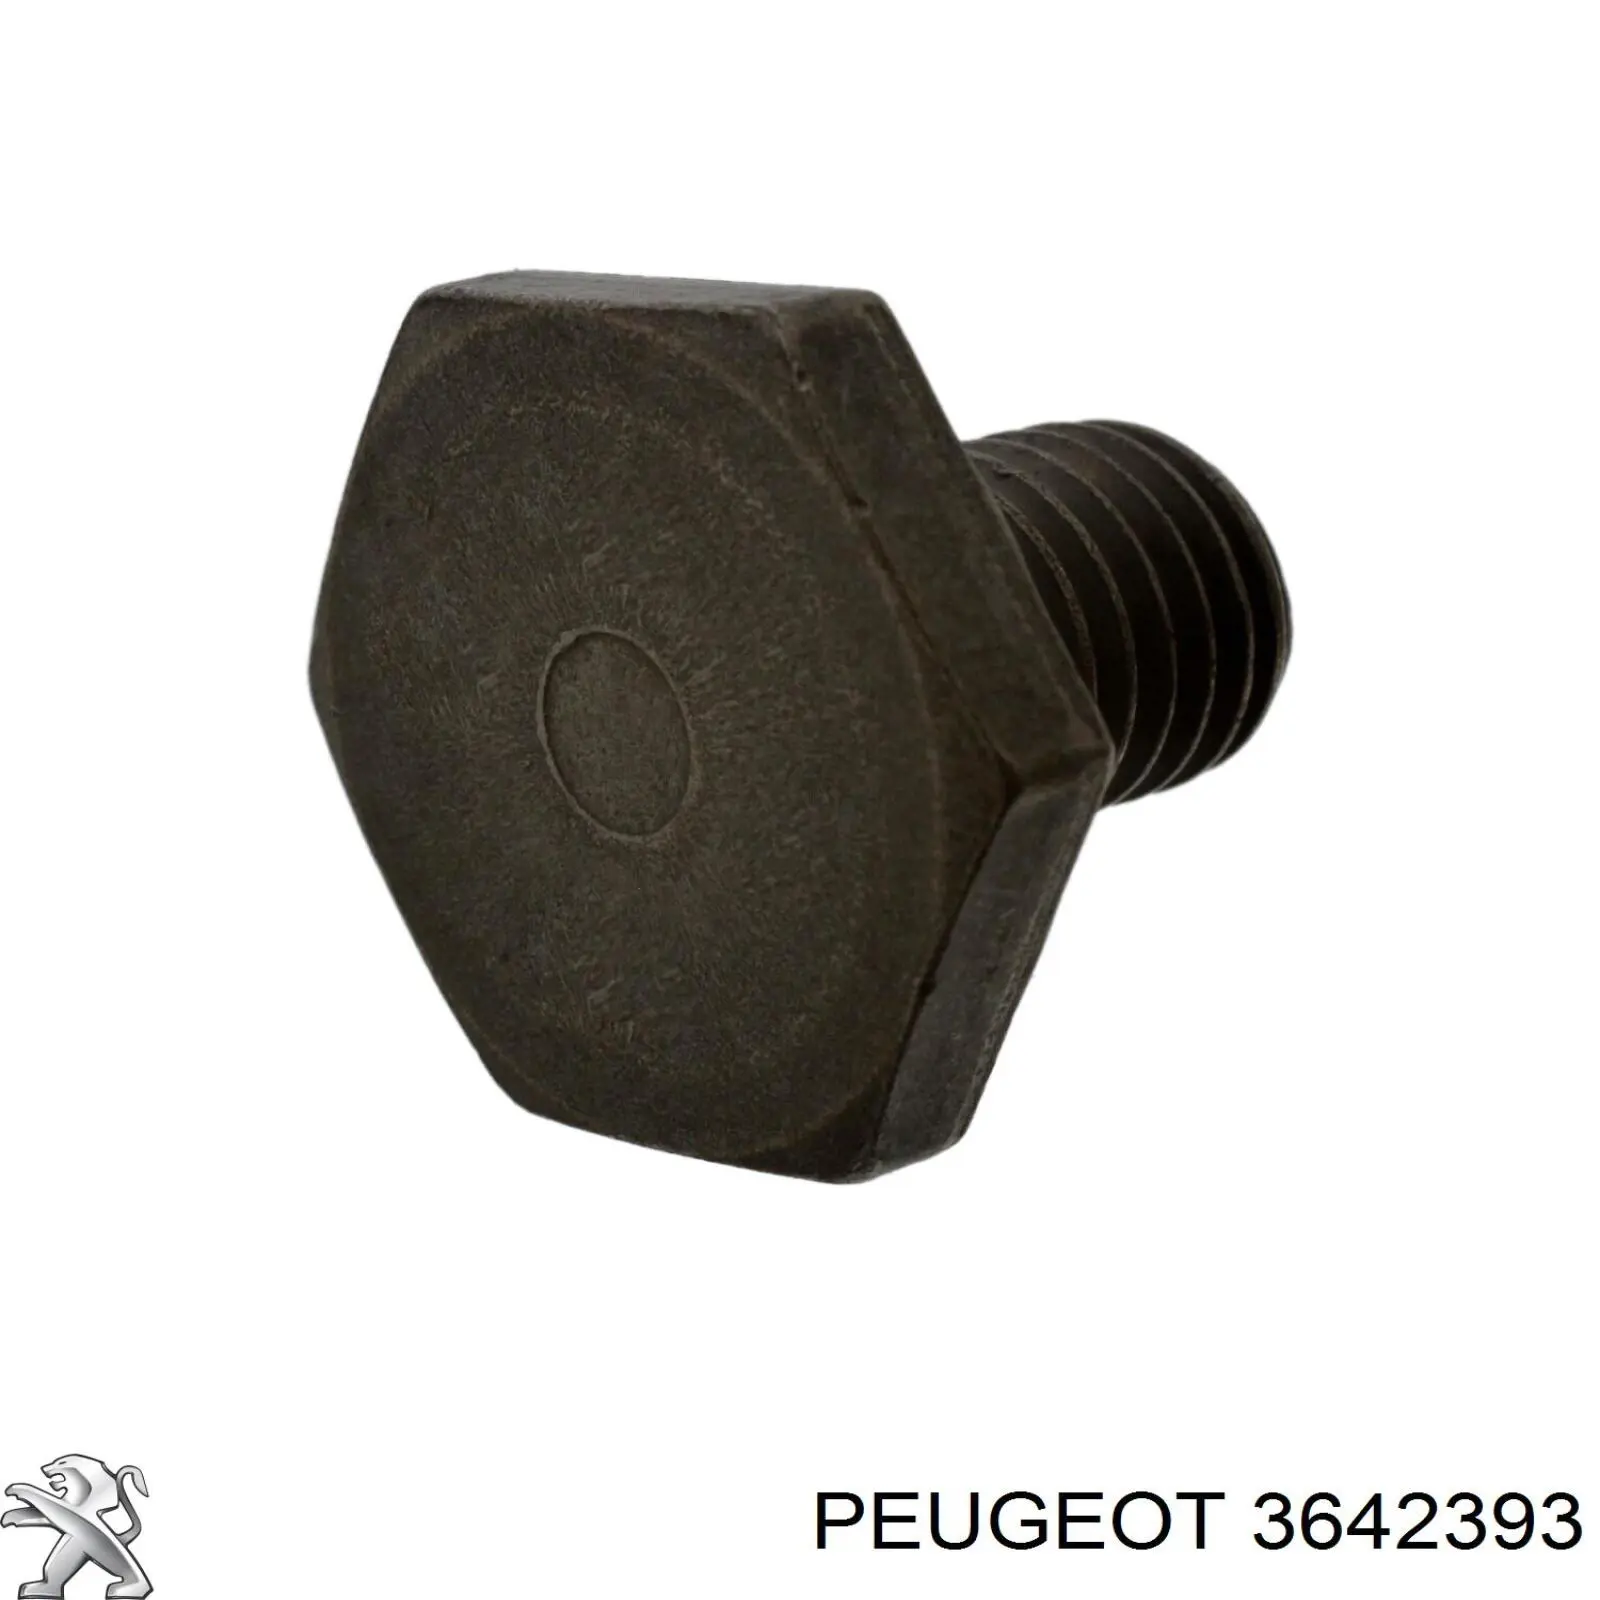 3642393 Peugeot/Citroen tapón roscado, colector de aceite